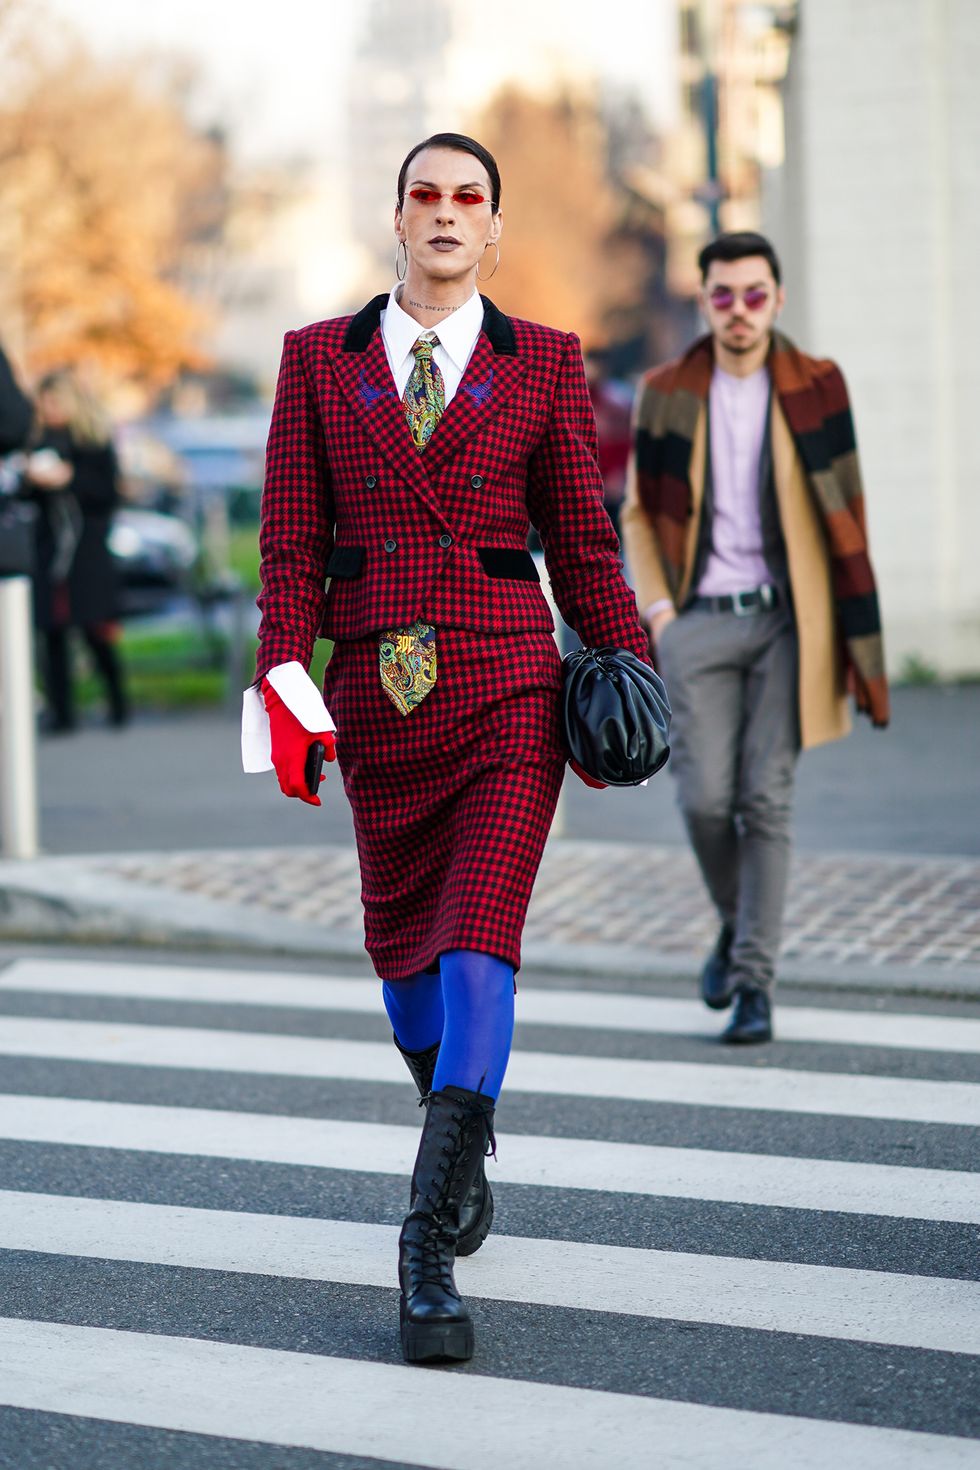 la moda inverno 2021 è ricca di inspo con i look street style liberi da stereotipi binari moda uomo e moda donna, guarda gli outfit gender fluid da copiare ora